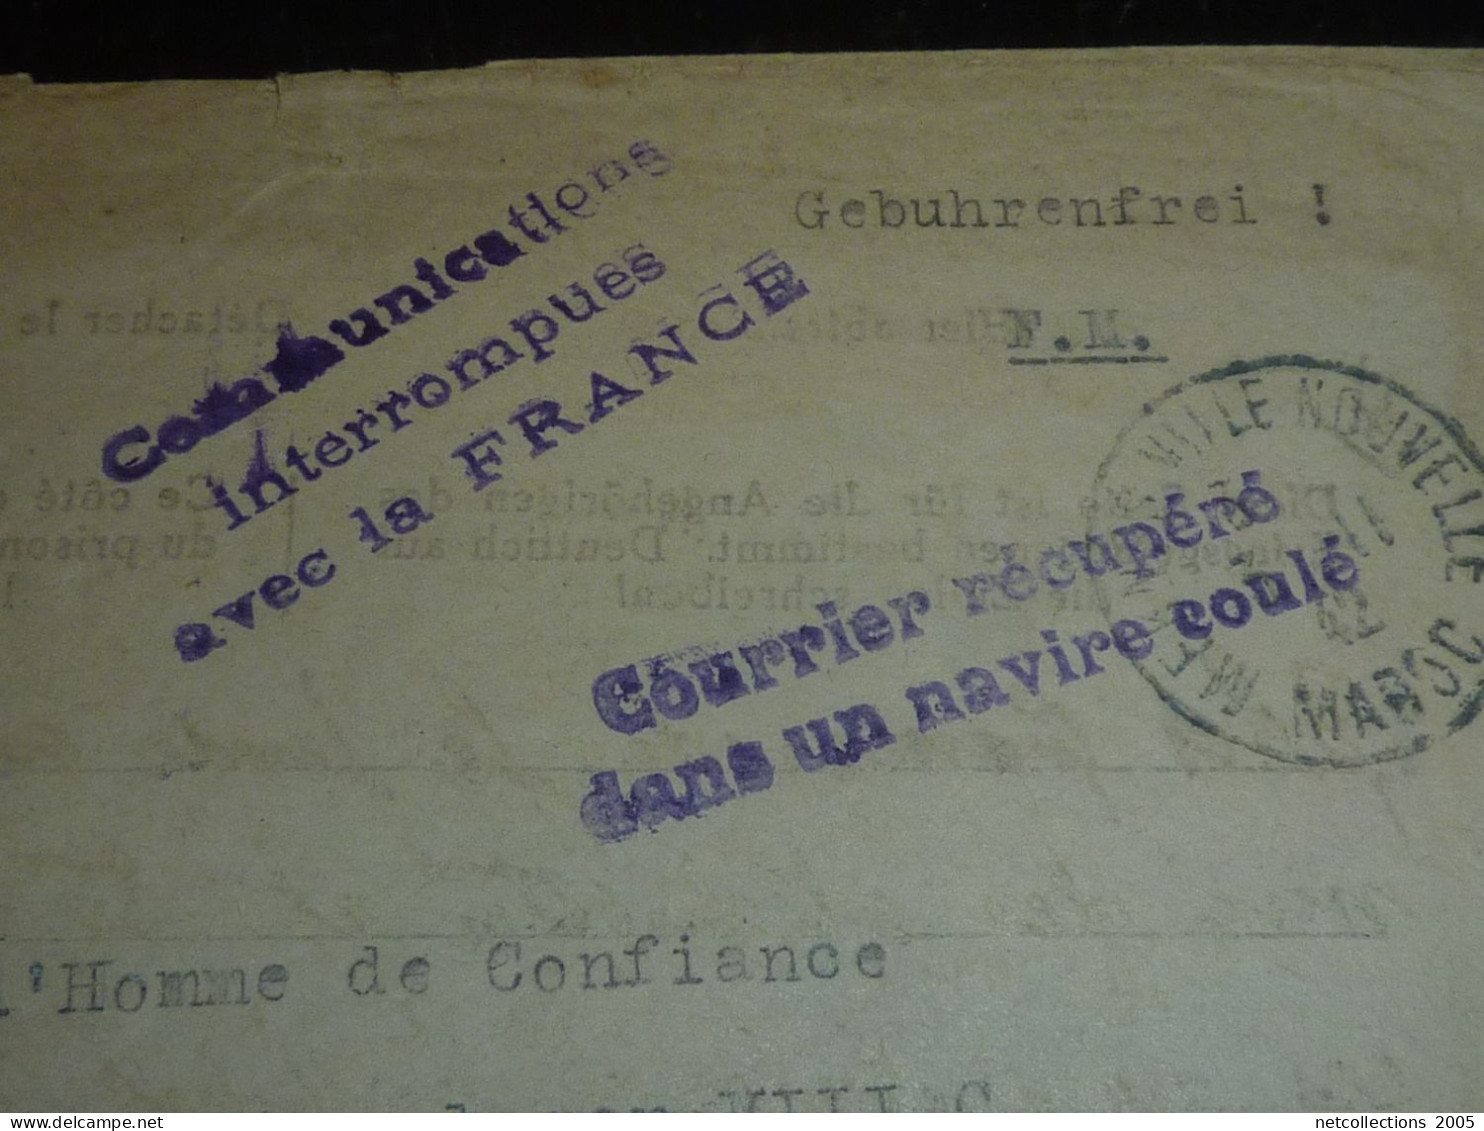 ENVELOPPE AU DEPART DE MEKNES 2-11-1942 - CACHET COURRIER RECUPERE DANS UN NAVIRE COULE -COURRIER EN FRANCHISE...(20/09) - Lettres Accidentées